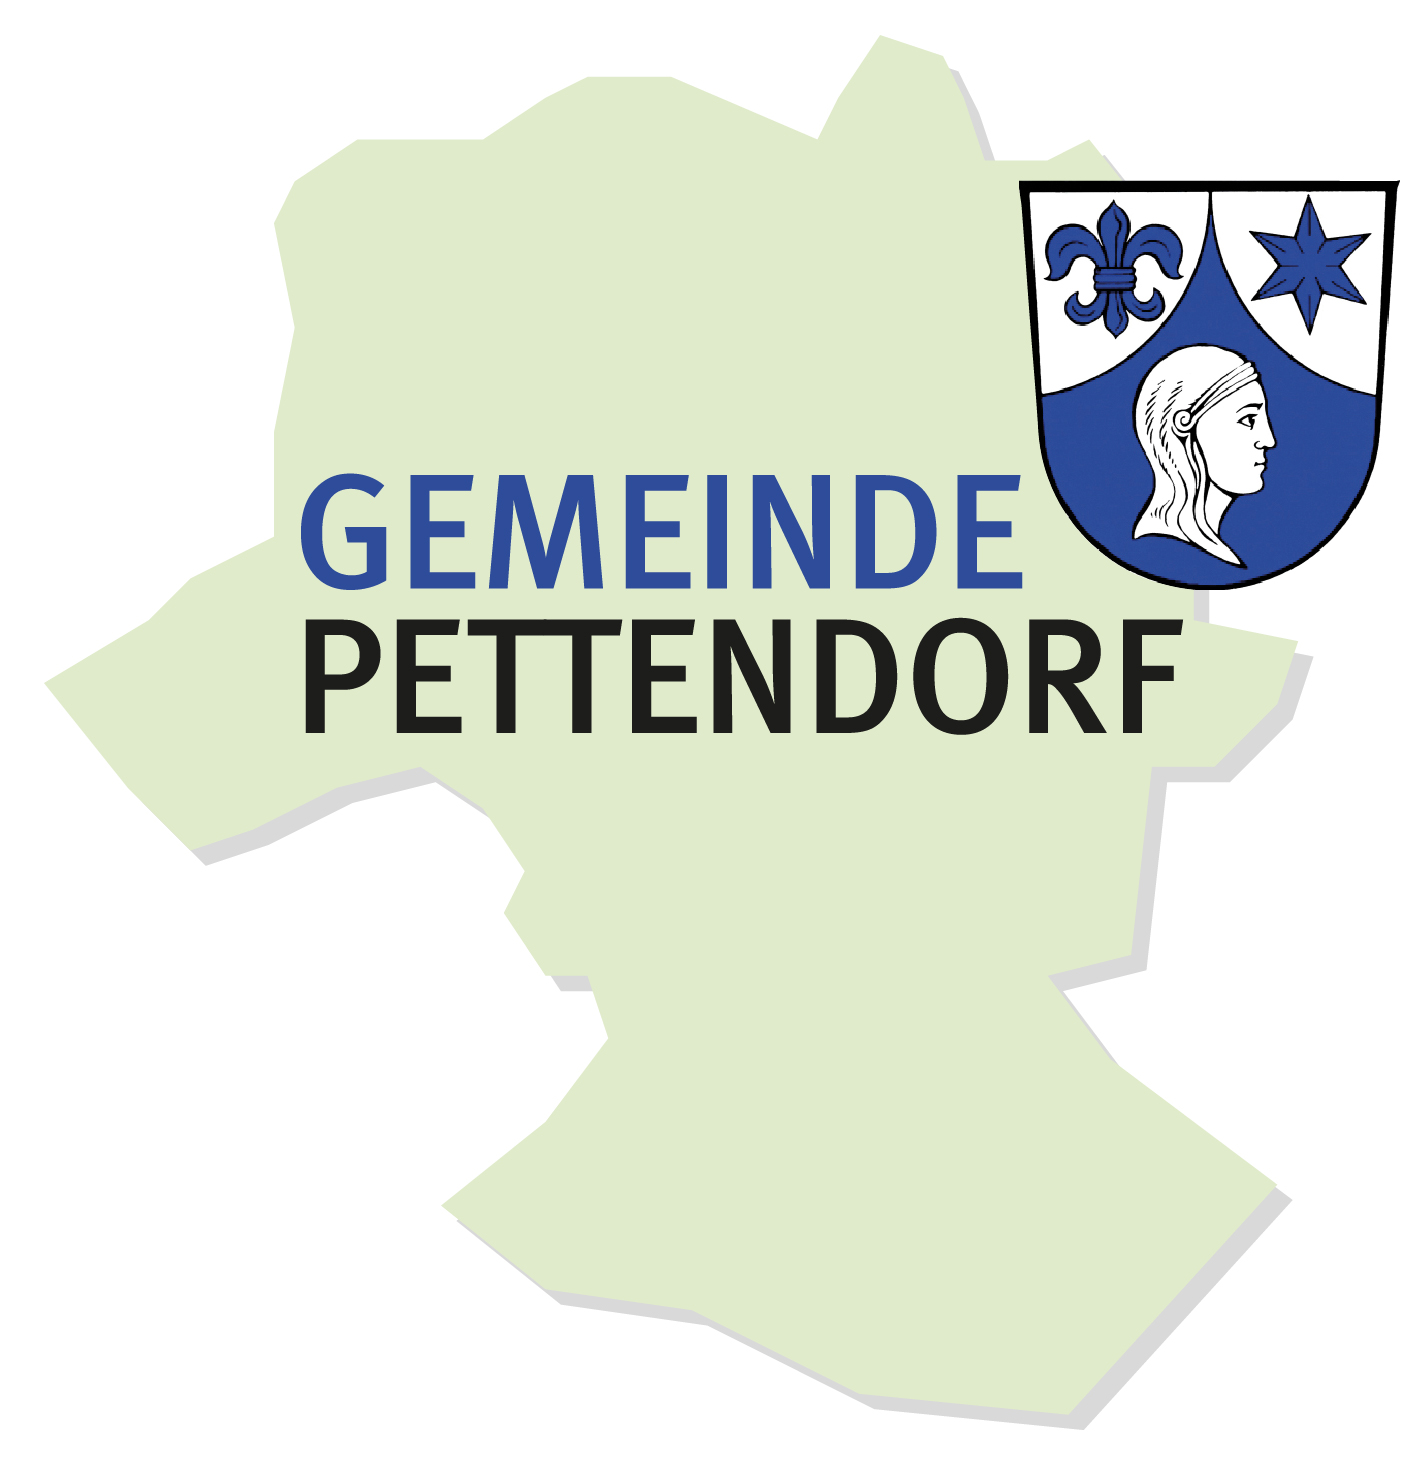 Das Logo zeigt einen Kartenausschnitt des Gemeindebereichs Pettendorf mit Wappen der Gemeinde